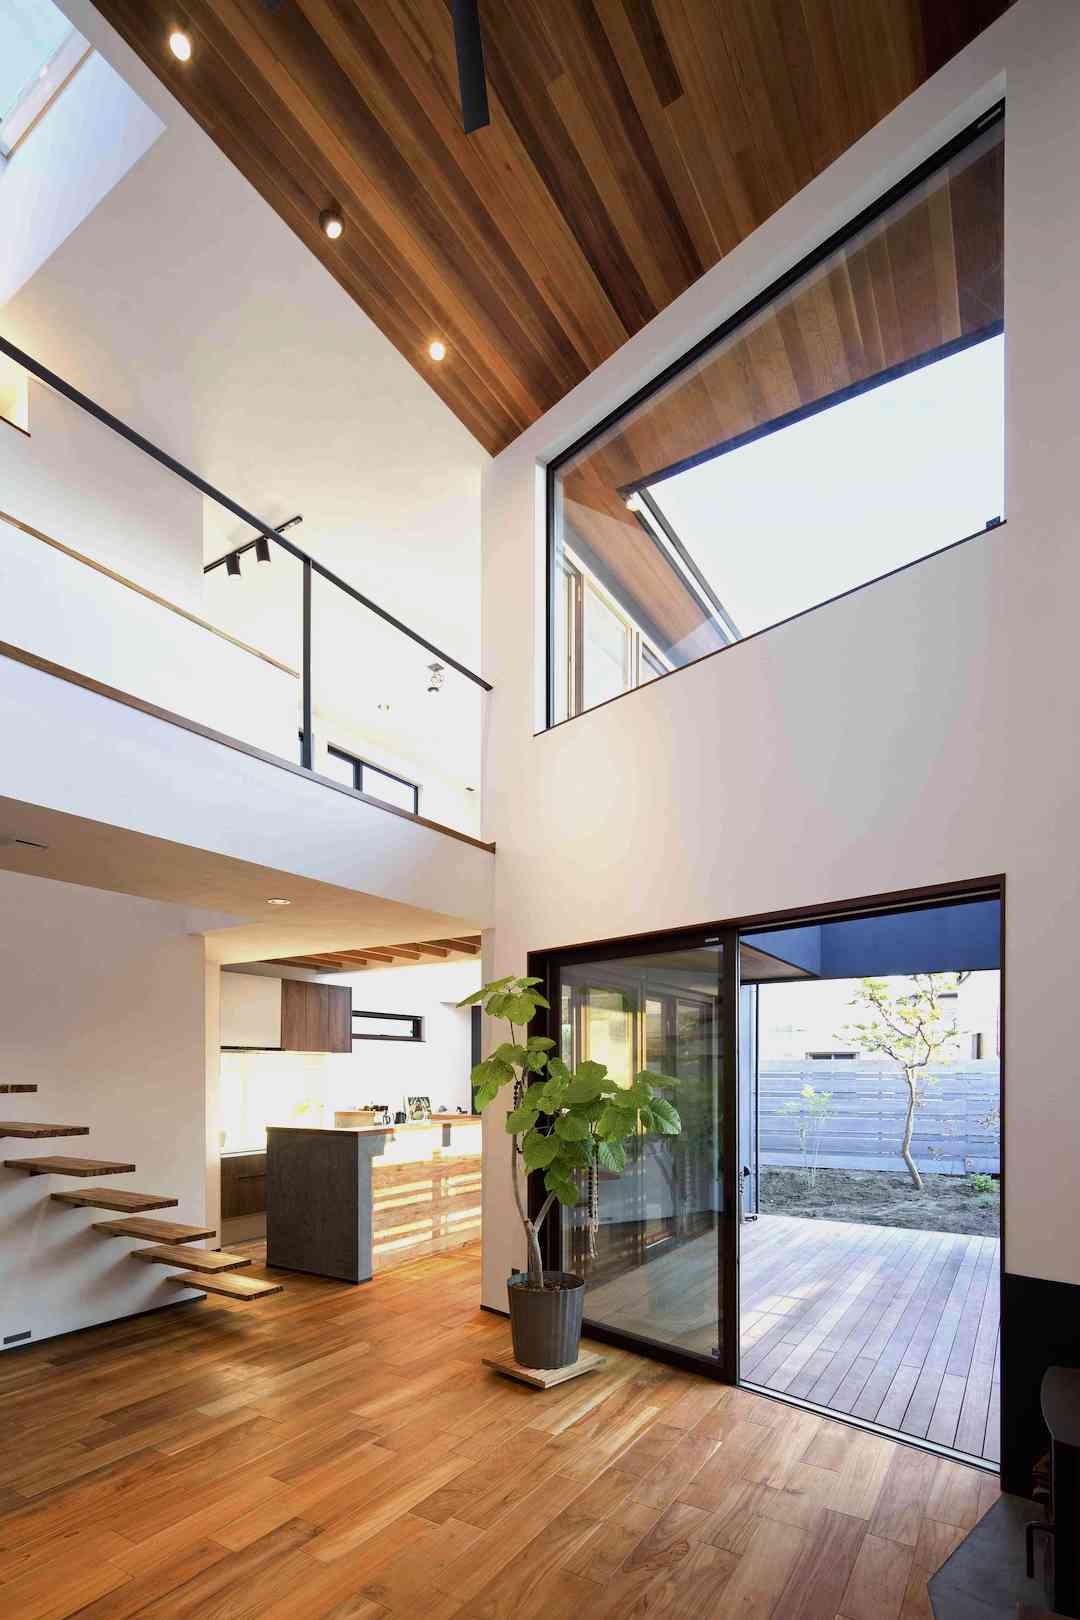 自然の中で暮らしているような家づくり 施工された家の特徴 内装 神奈川での注文住宅は山下建設 イメージをカタチにする技術力で思いっきりmystyleの家を提案